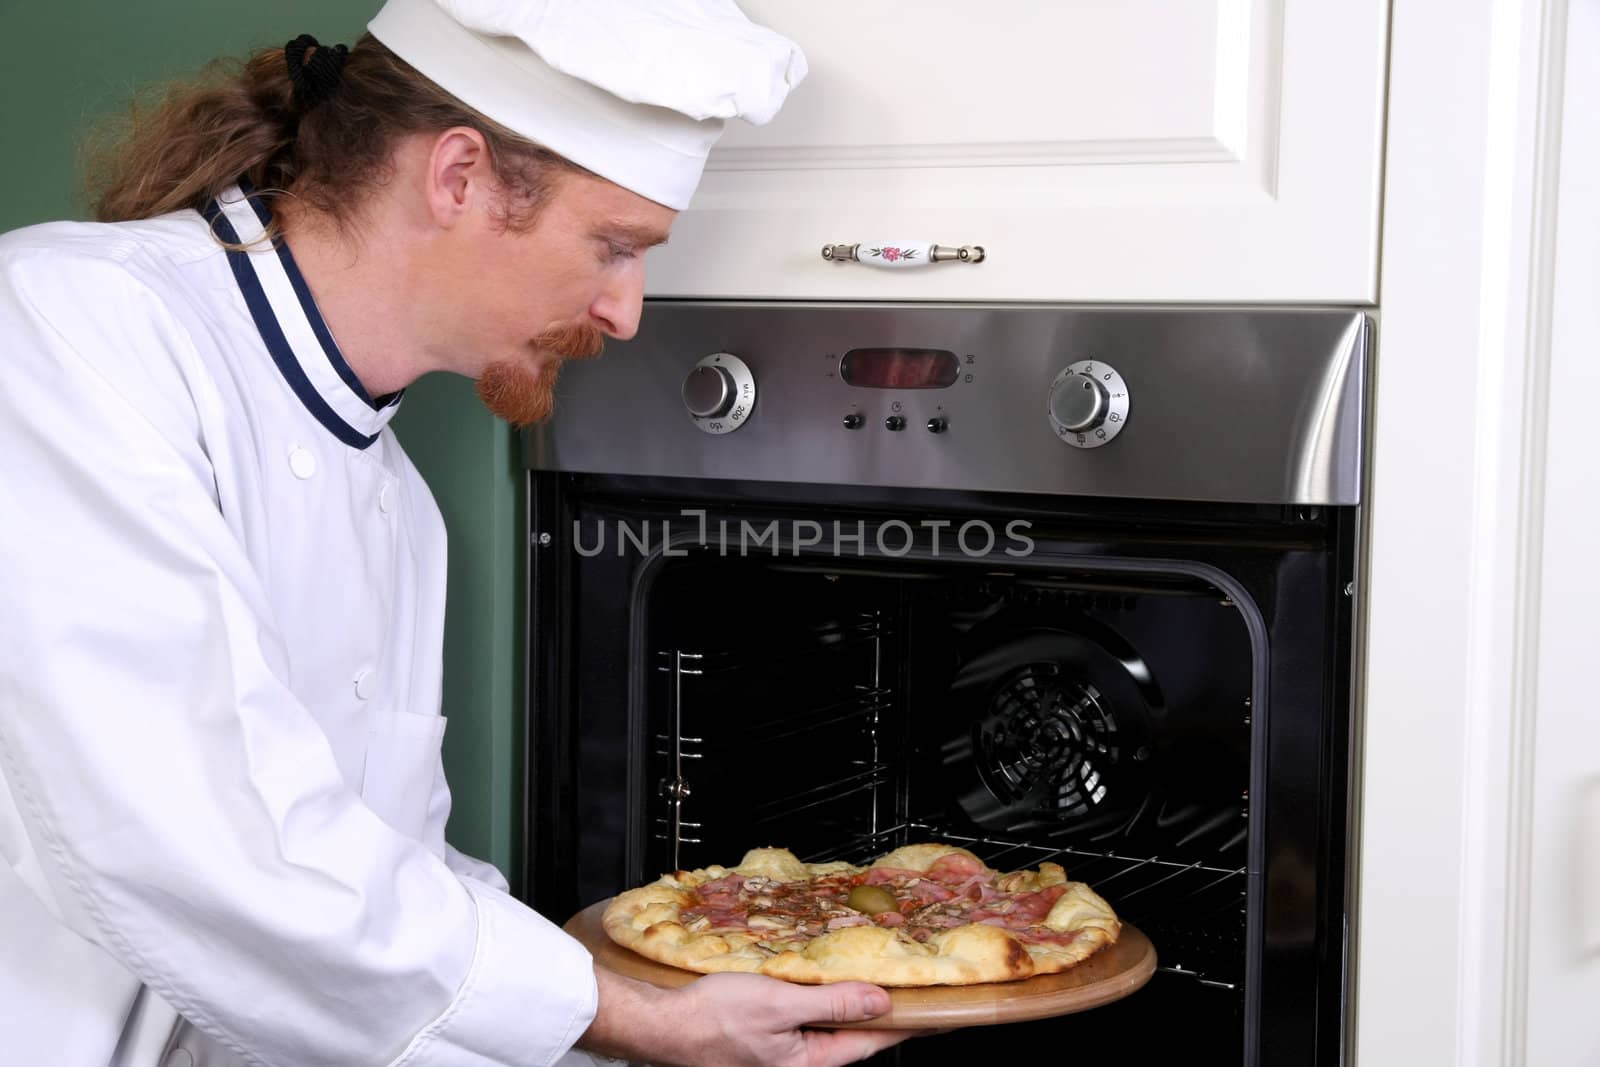 Young chef prepared italian pizza in kitchen by vladacanon